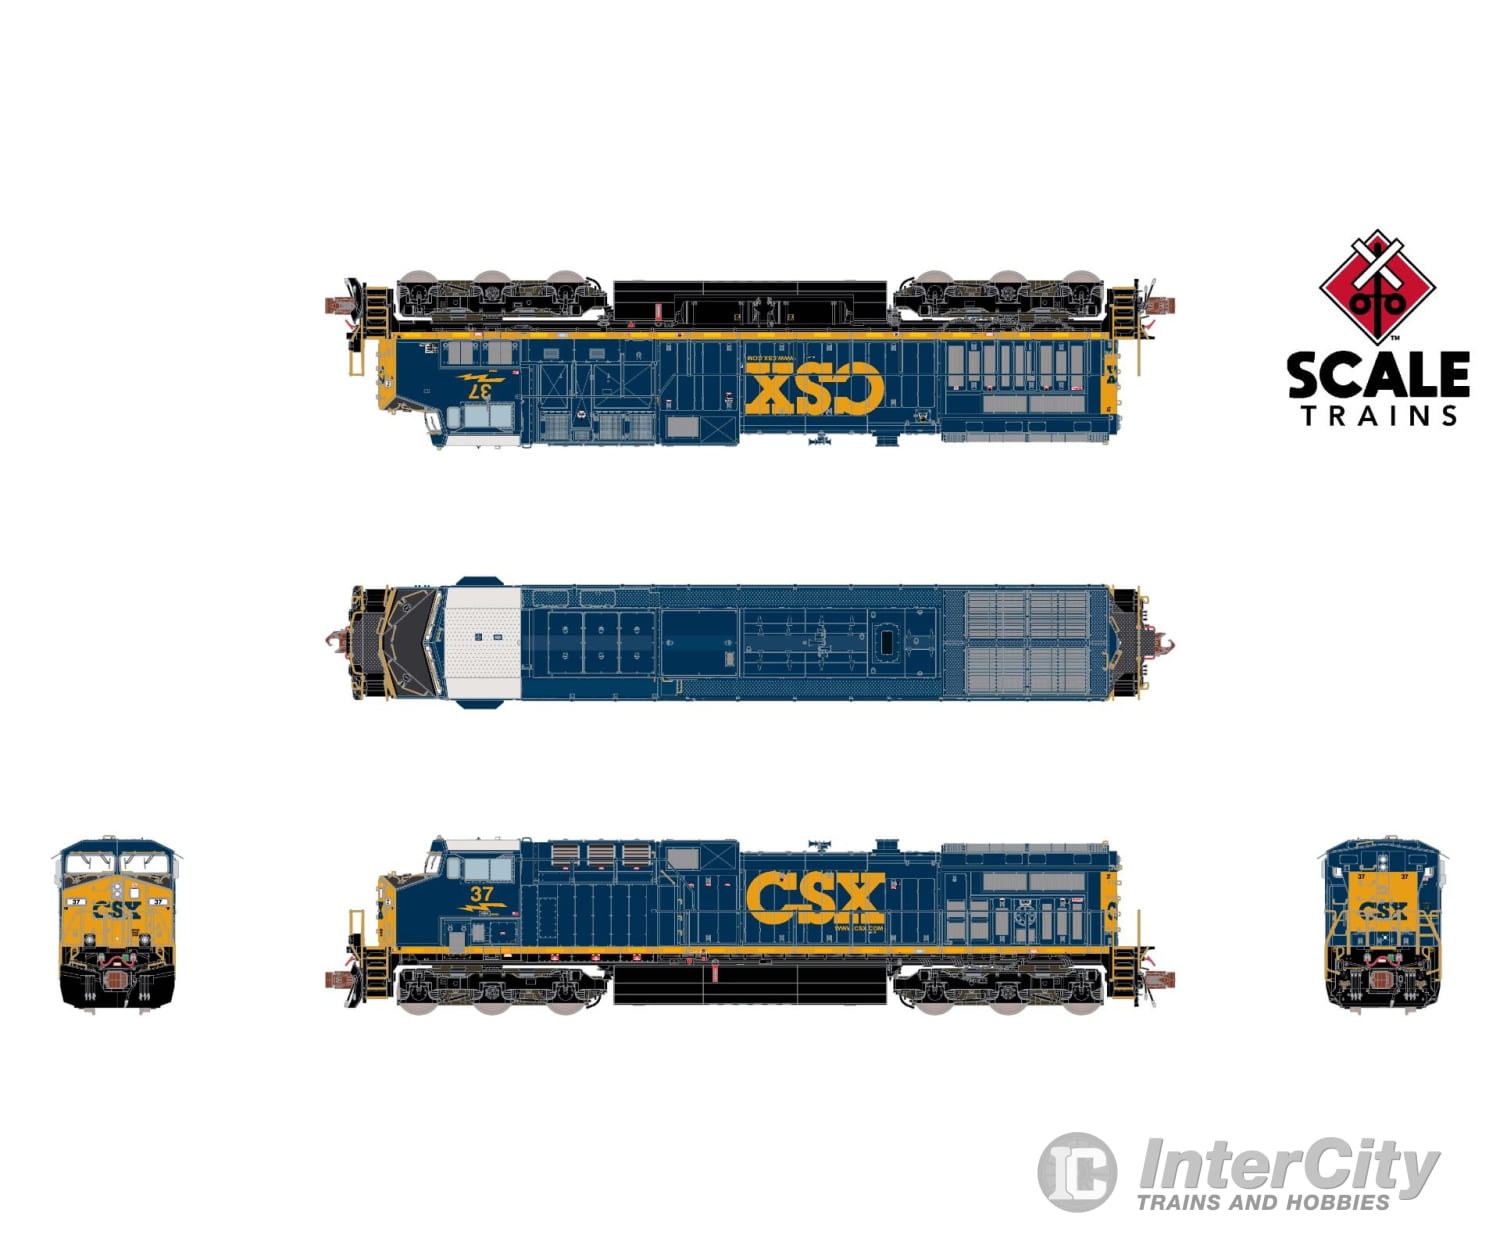 Scale Trains Sxt39113 Rivet Counter N Ge Ac4400Cw Csx #37 Yn3C Scheme Dcc & Sound Locomotives